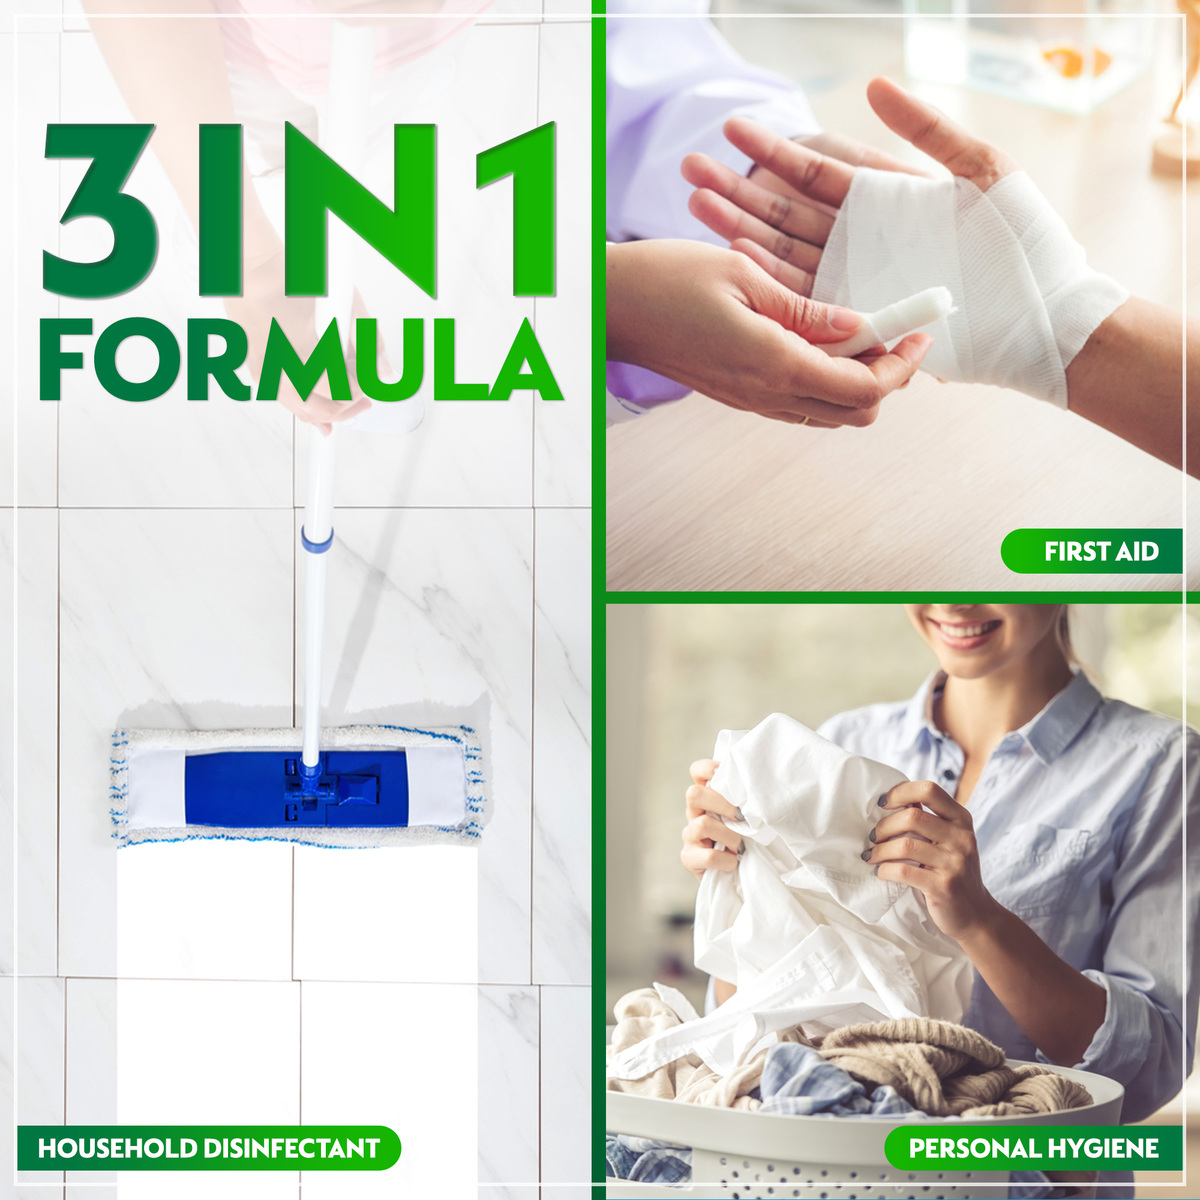 Dettol Antiseptic Antibacterial Disinfectant Liquid 750 ml